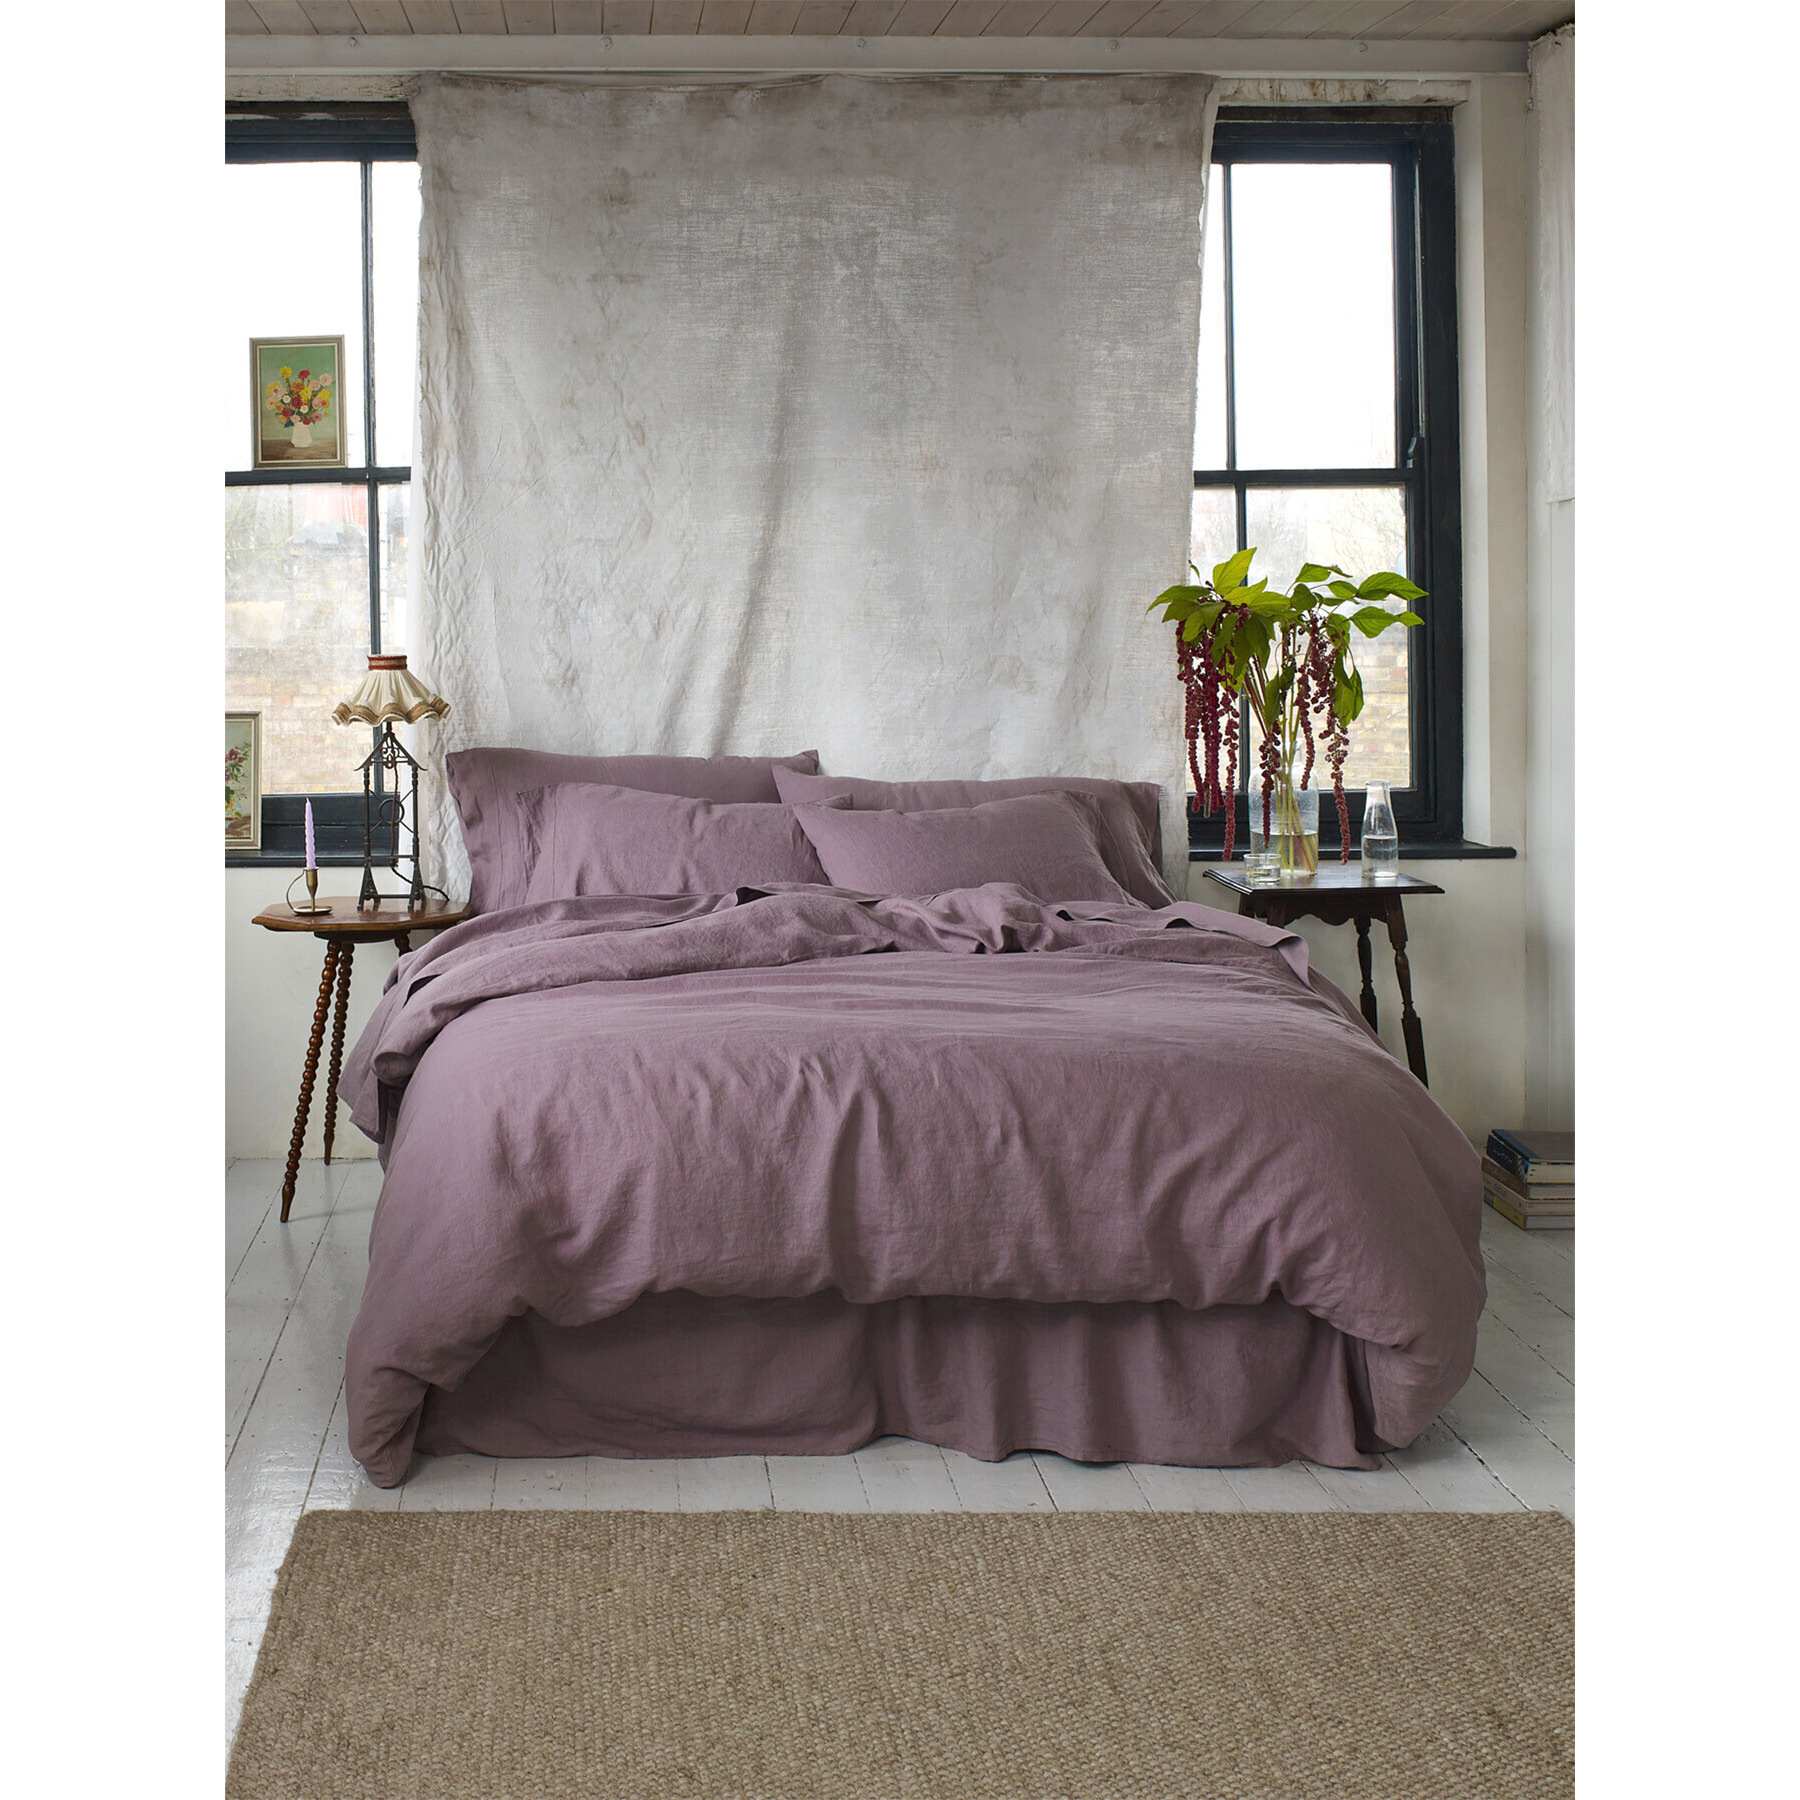 Piglet in Bed Linen Flat Sheet - Size Single Purple - image 1